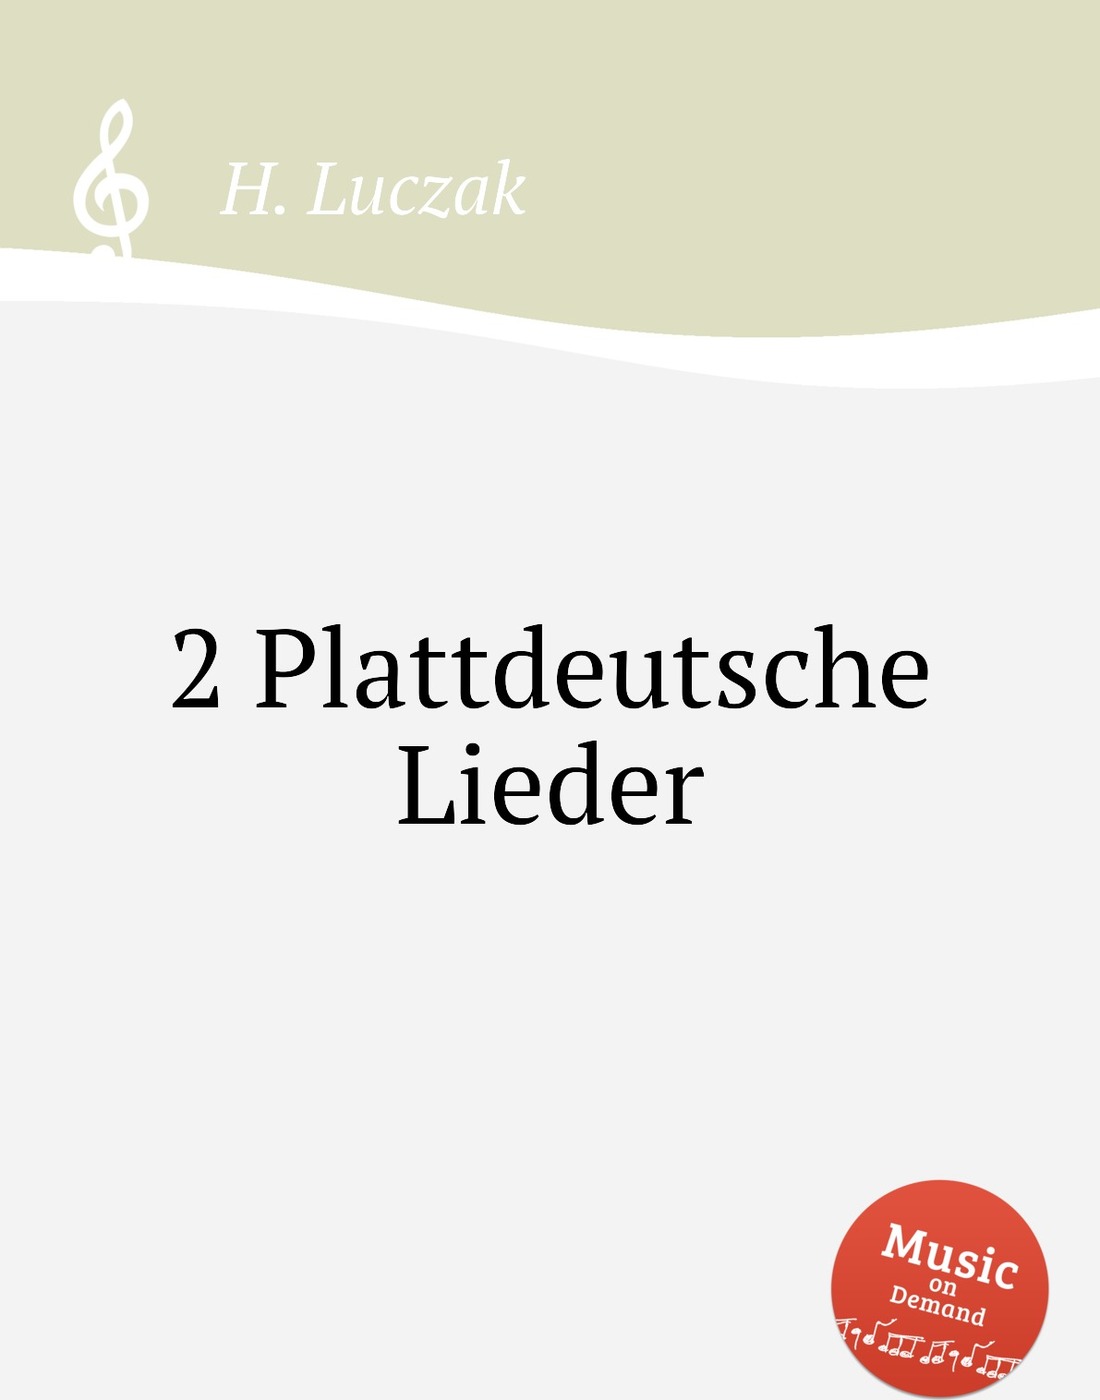 Найти и купить 2 plattdeutsche lieder с доставкой, фотографиями и отзывами....